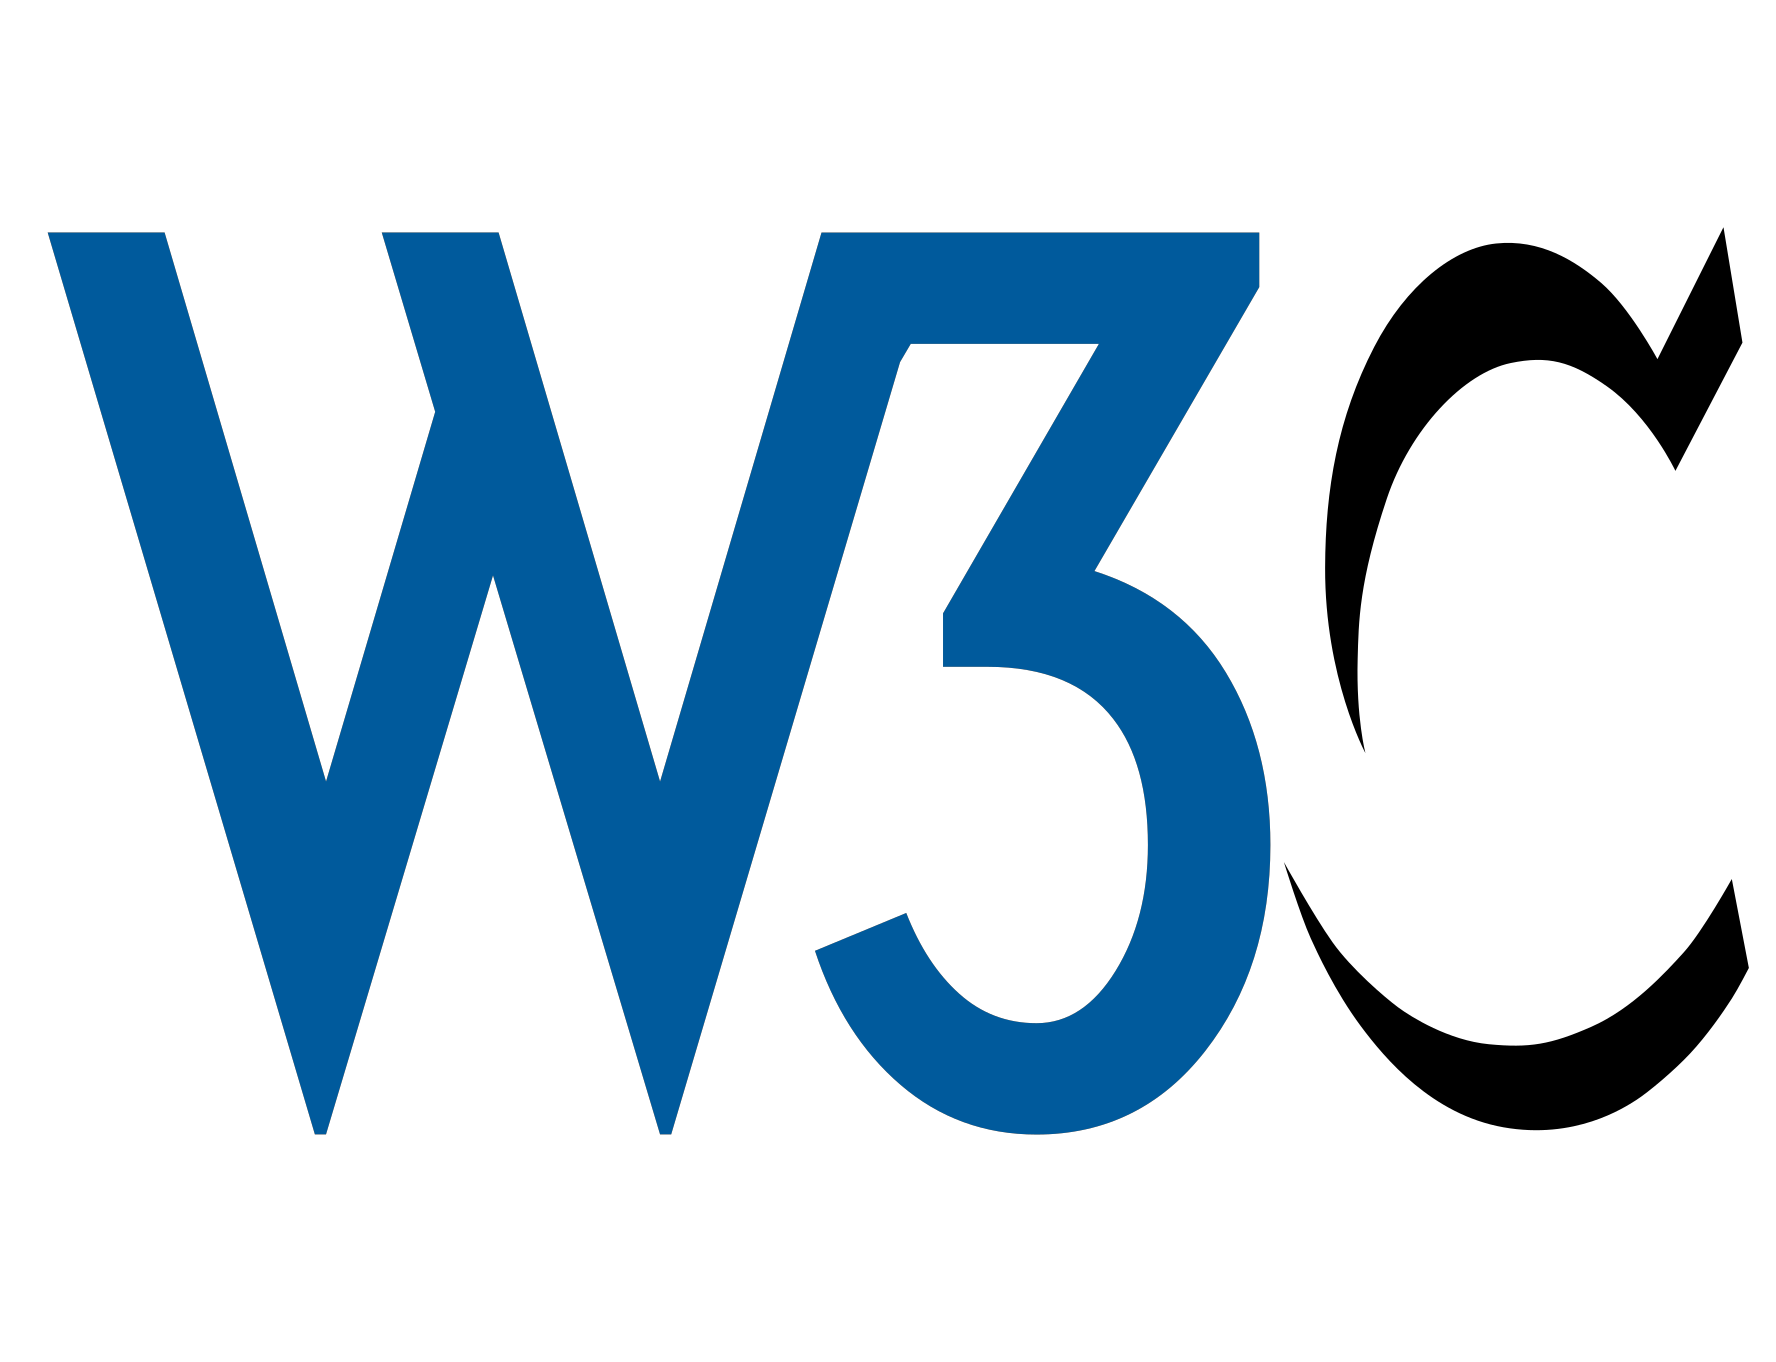 웹 접근성 가이드라인 1.0 (WCAG 1.0)